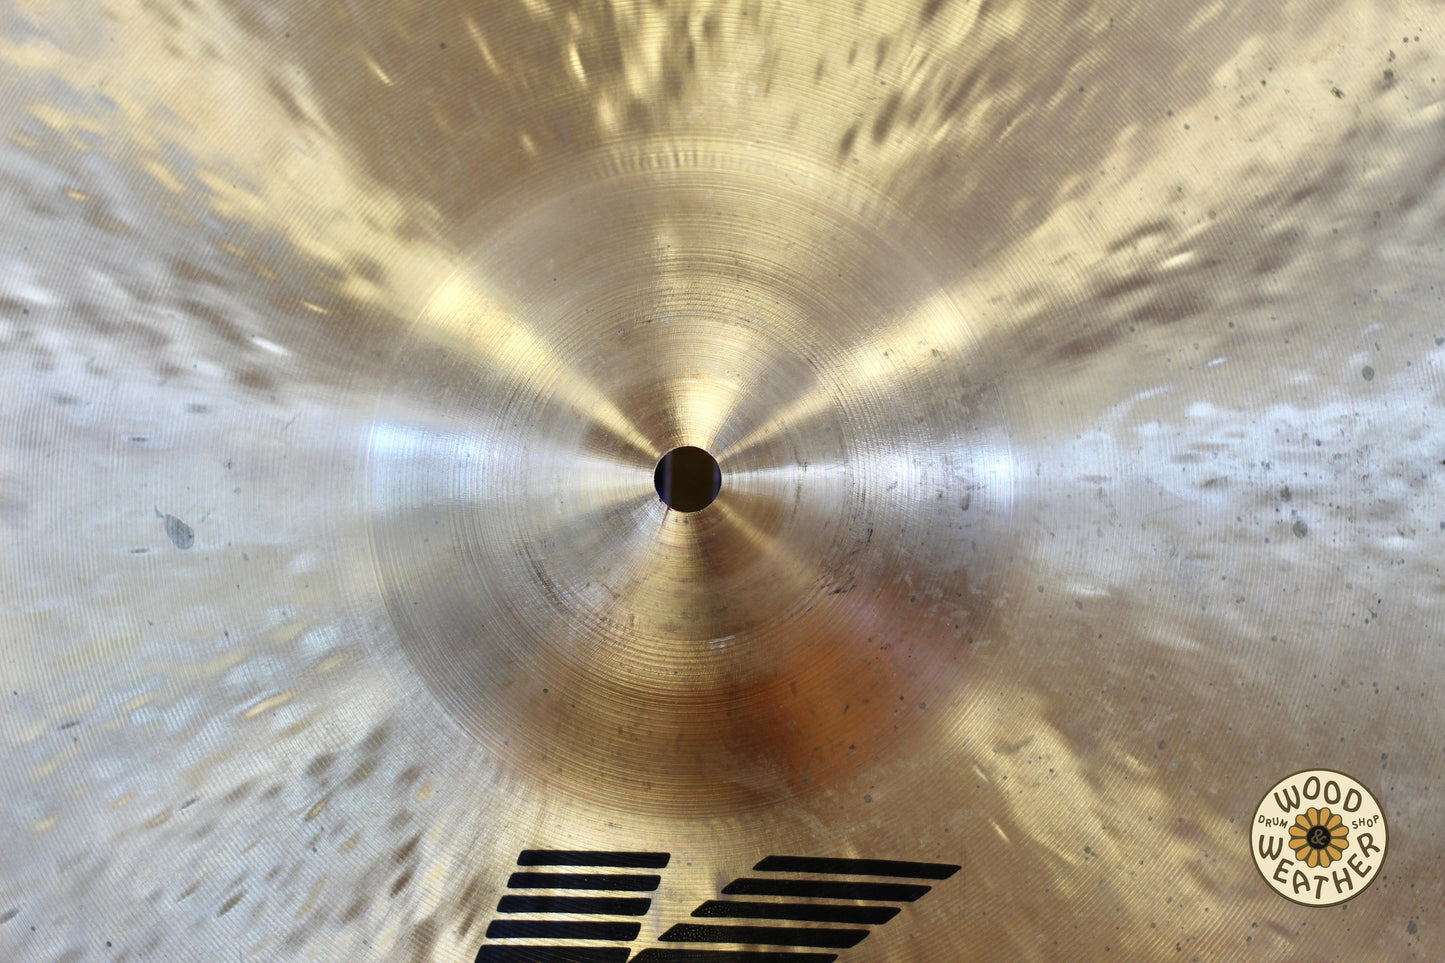 Zildjian K Dark Medium Thin 18" Crash Cymbal 1435g - USED